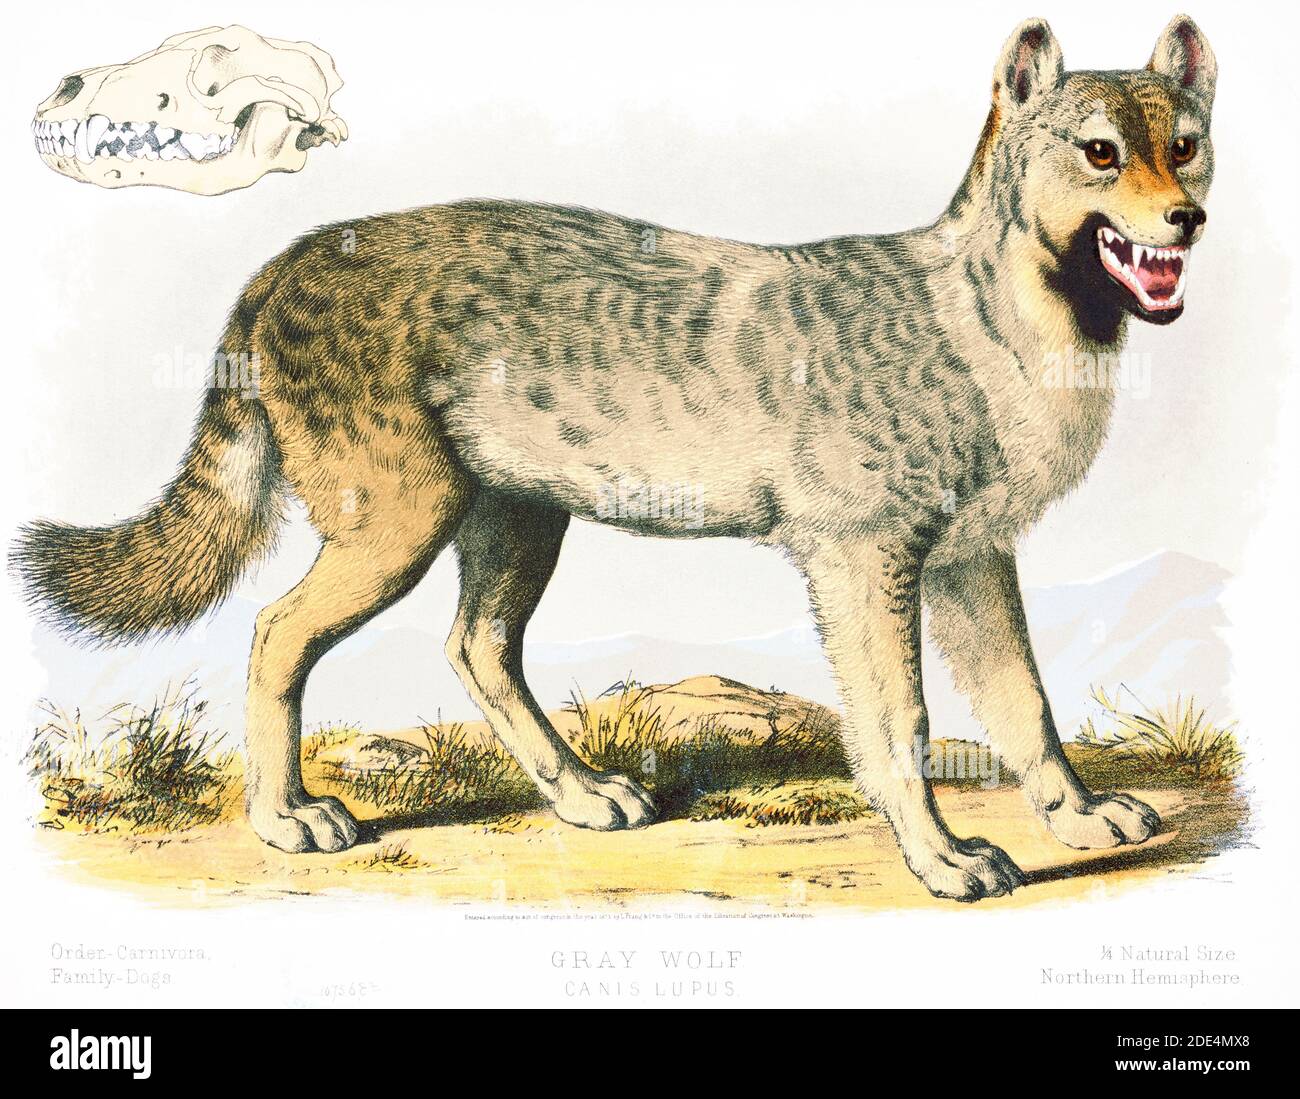 Drucken zeigt eine Ansicht von der rechten Seite des "grauen Wolf", volle Länge, stehend, mit dem Kopf leicht nach rechts gedreht, zeigt auch ein Schädel Stockfoto